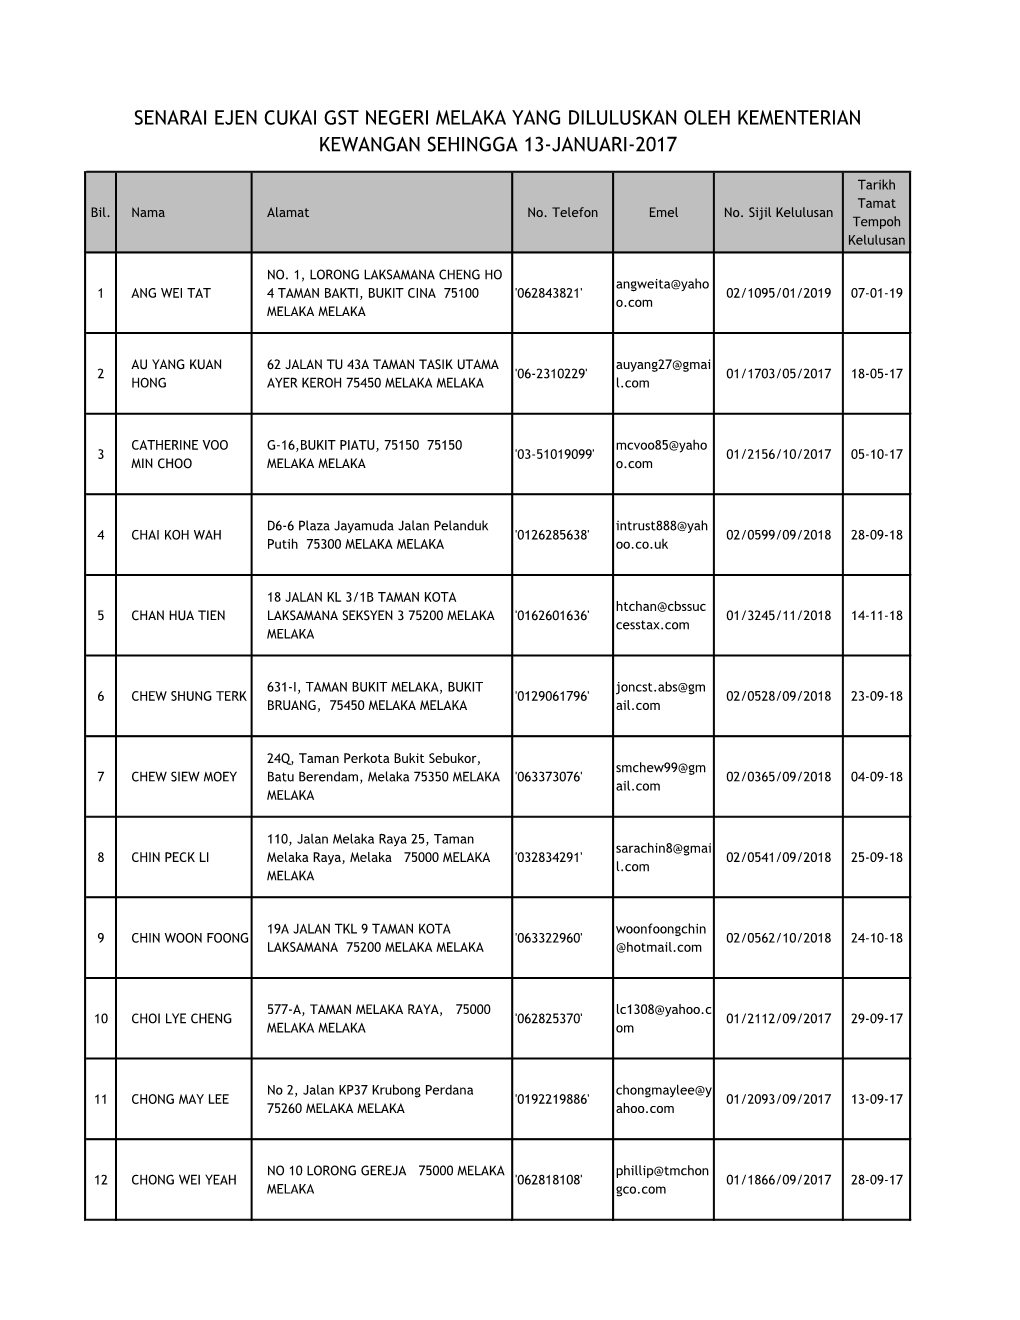 Senarai Ejen Cukai Gst Negeri Melaka Yang Diluluskan Oleh Kementerian Kewangan Sehingga 13-Januari-2017